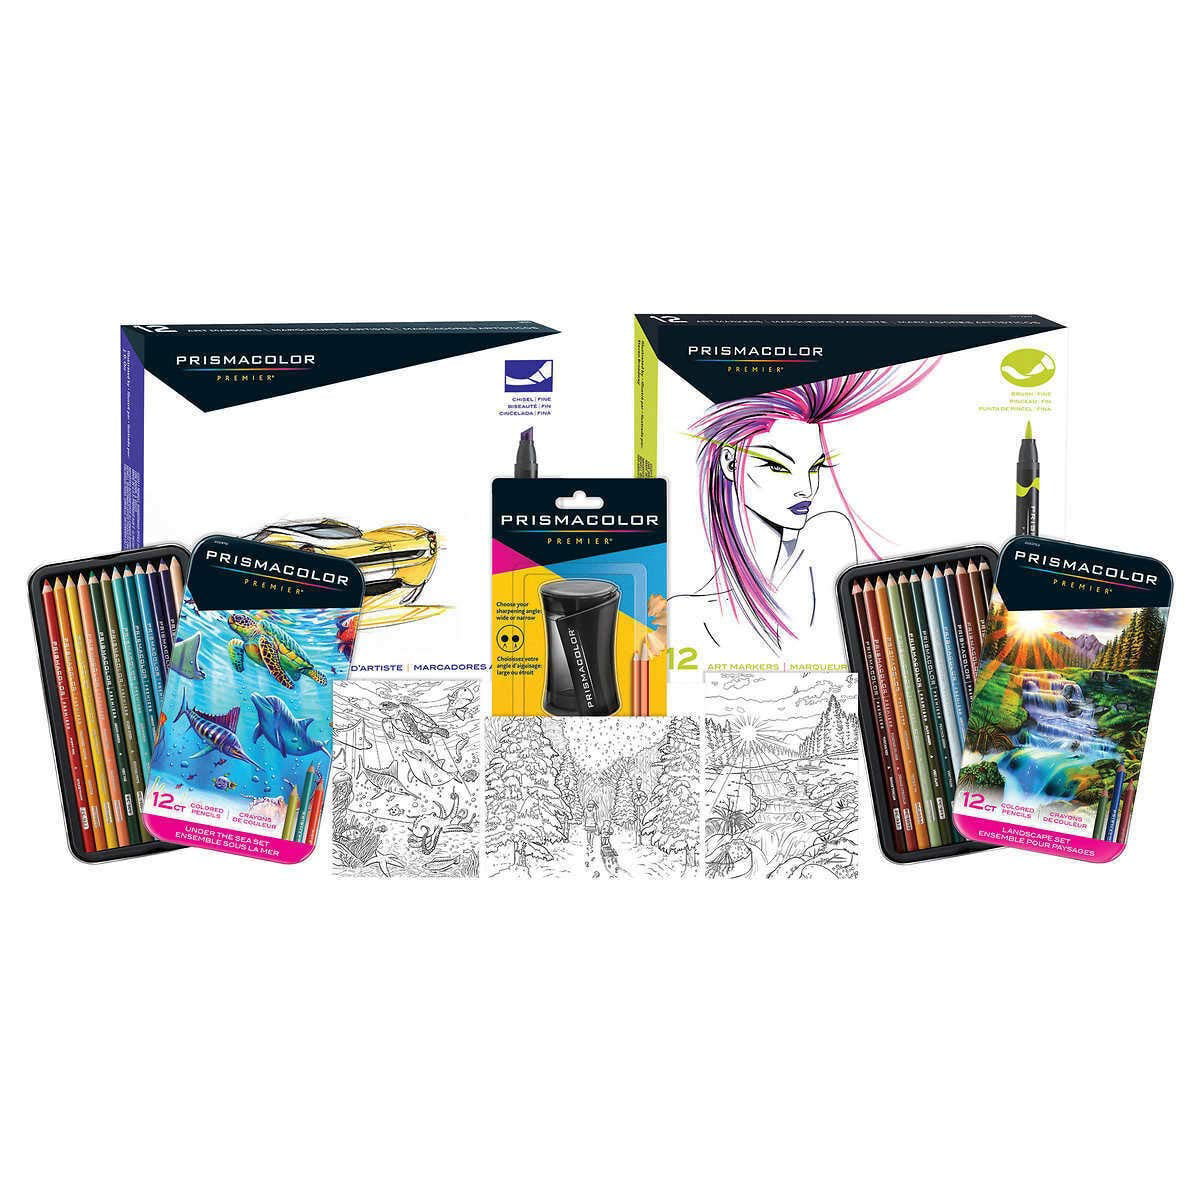 Prisma Premier Gift Set Prismacolor 52 PC Premium Color Art Markers Pencils  for sale online